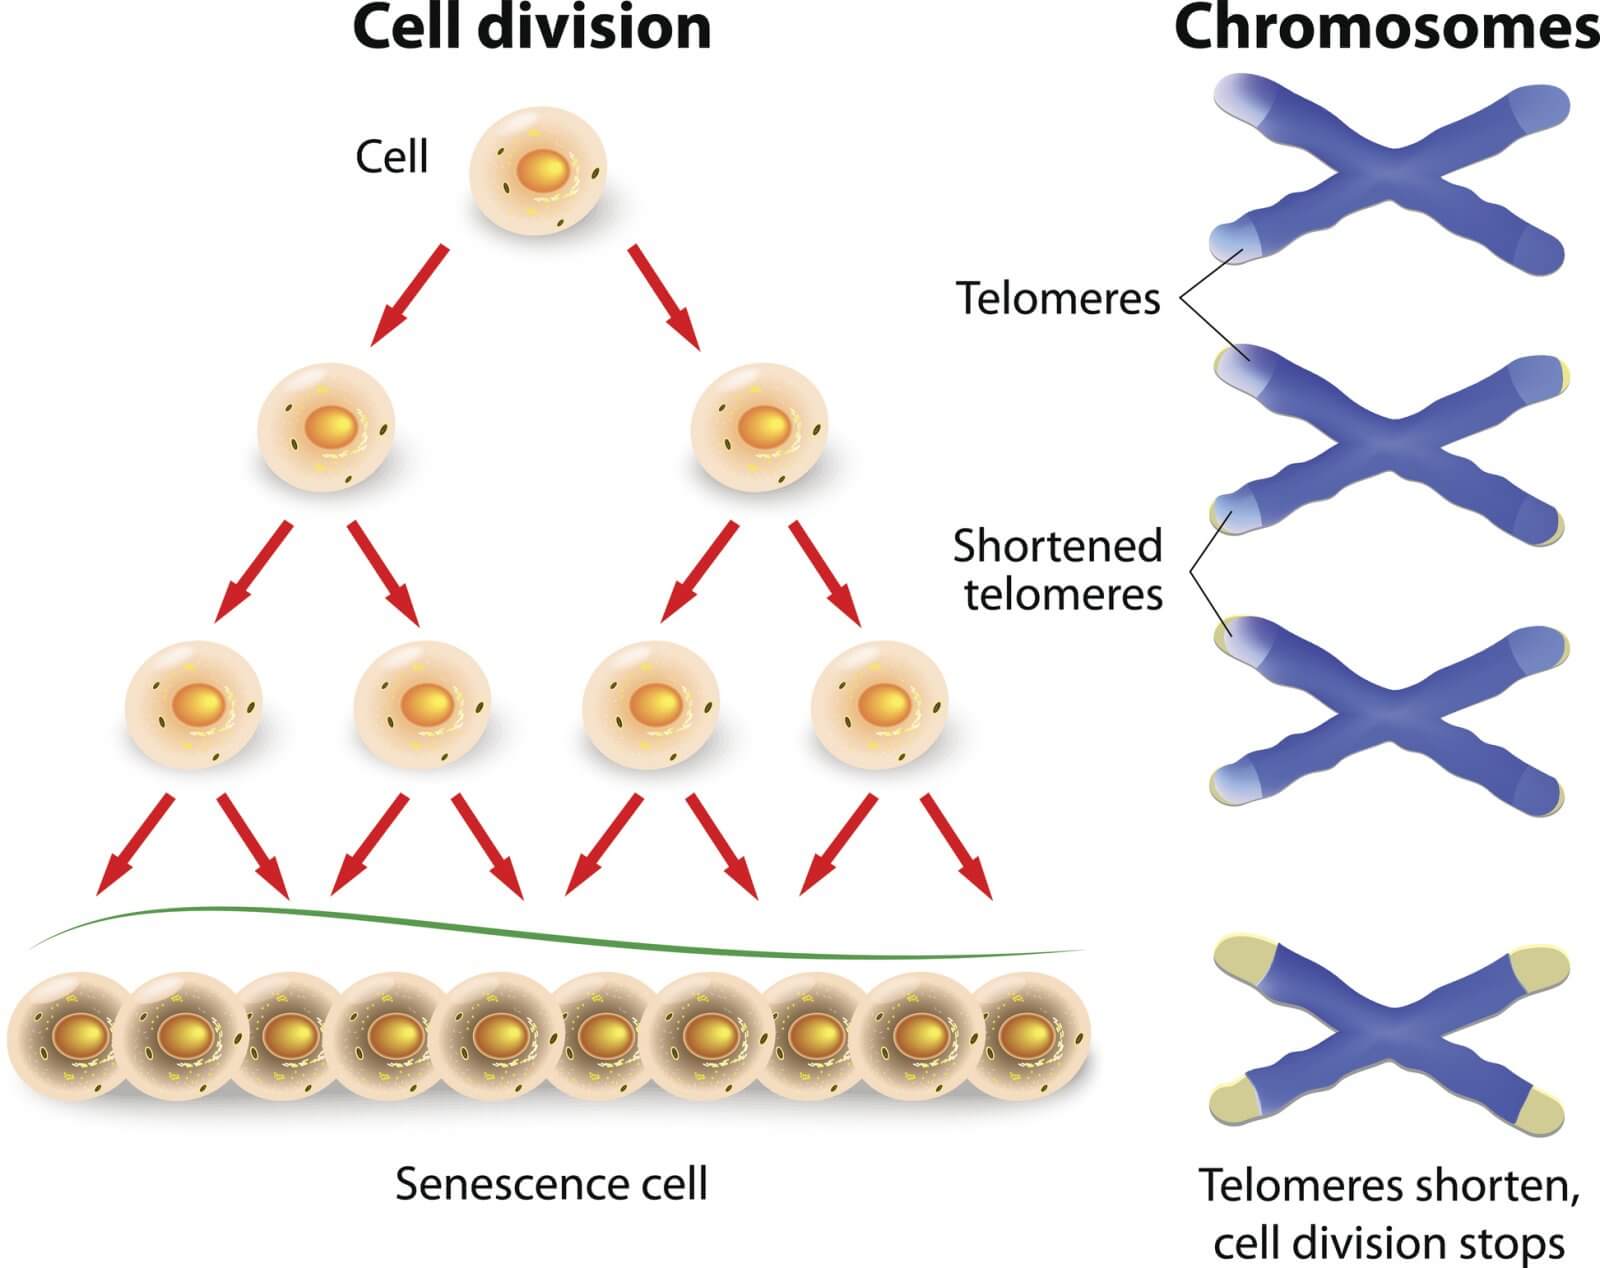 telomoeres